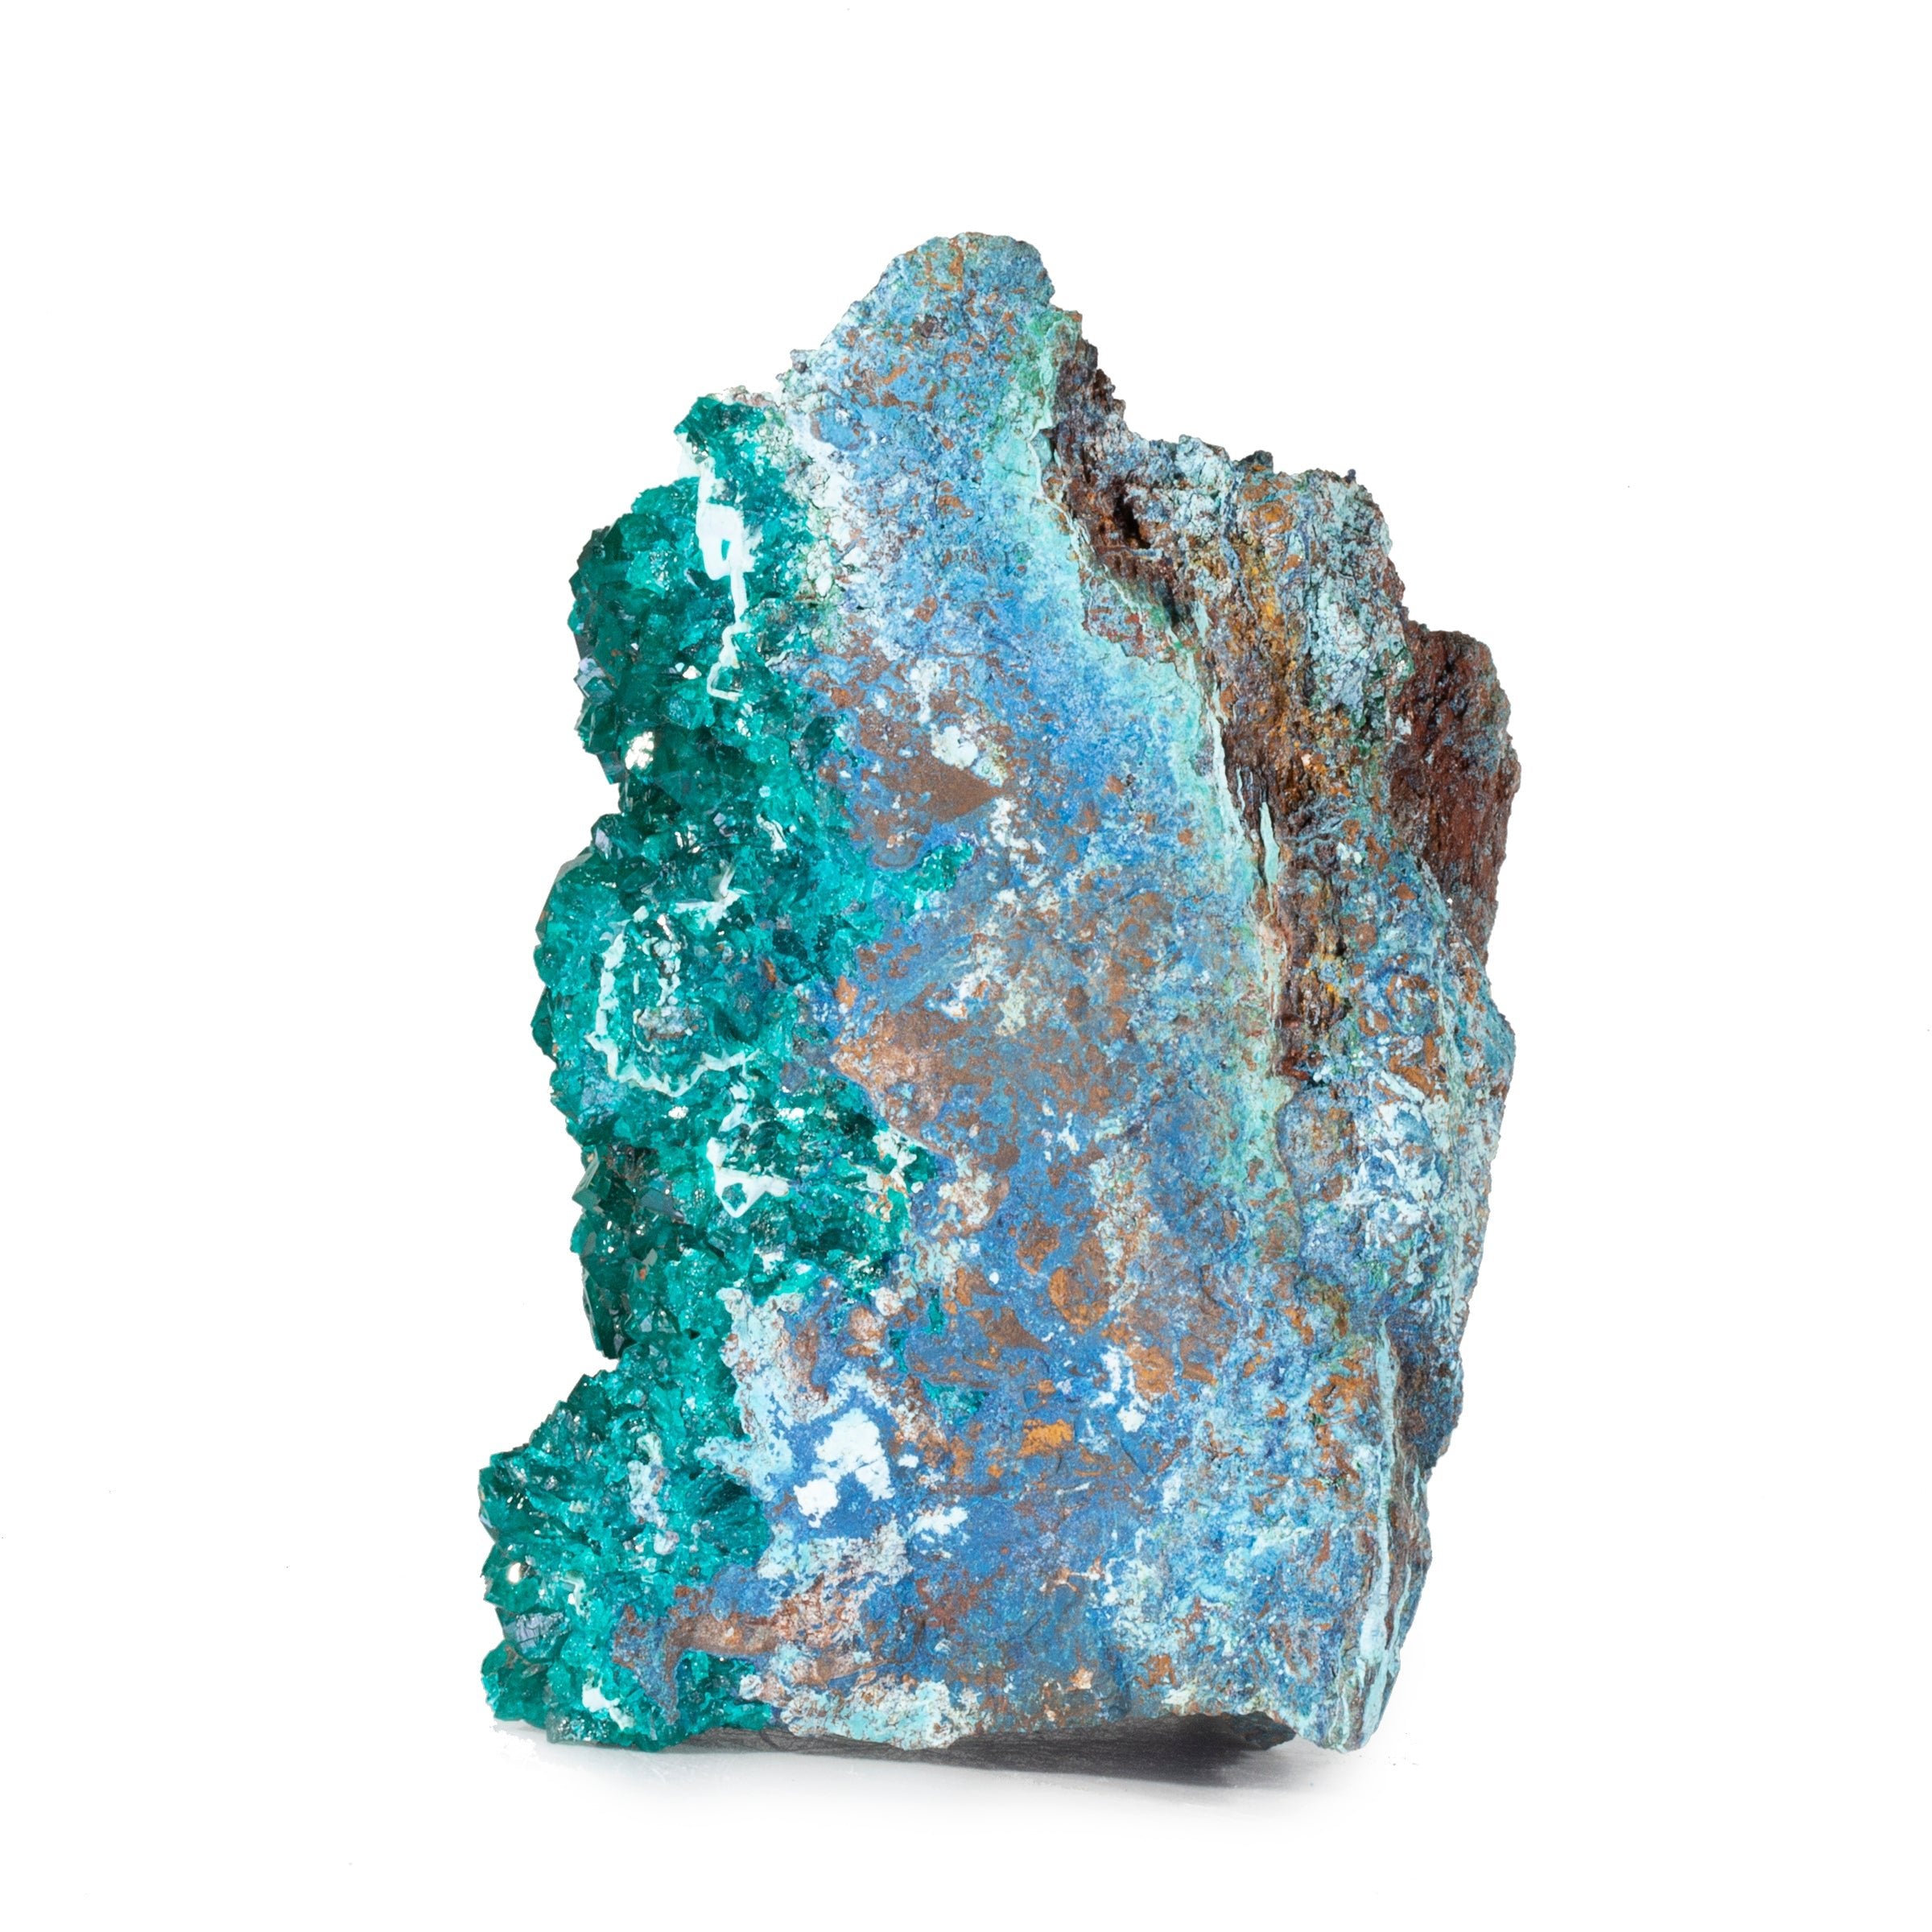 Dioptase 4 inch 1.38lb Natural Crystal Specimen on Matrix - Congo - YX-146 - Crystalarium